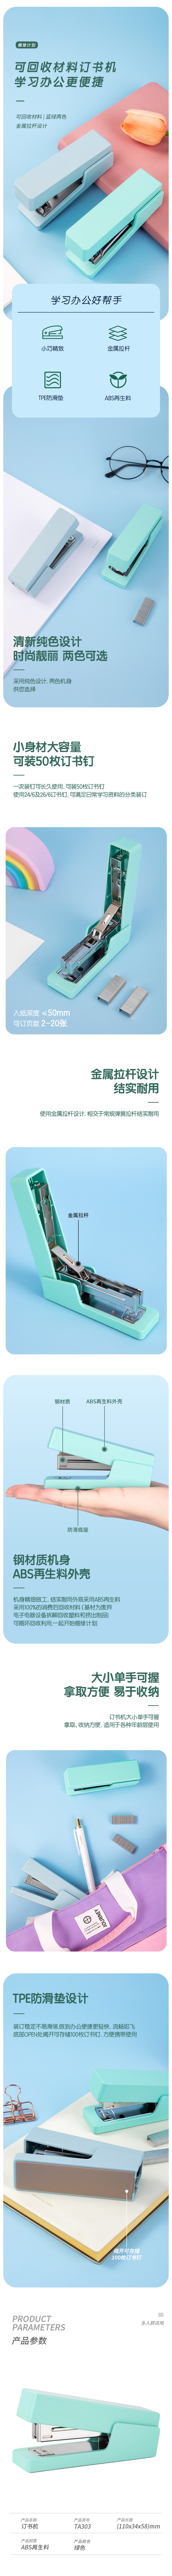 得力TA303订书机(绿色)(1台订书机/盒)